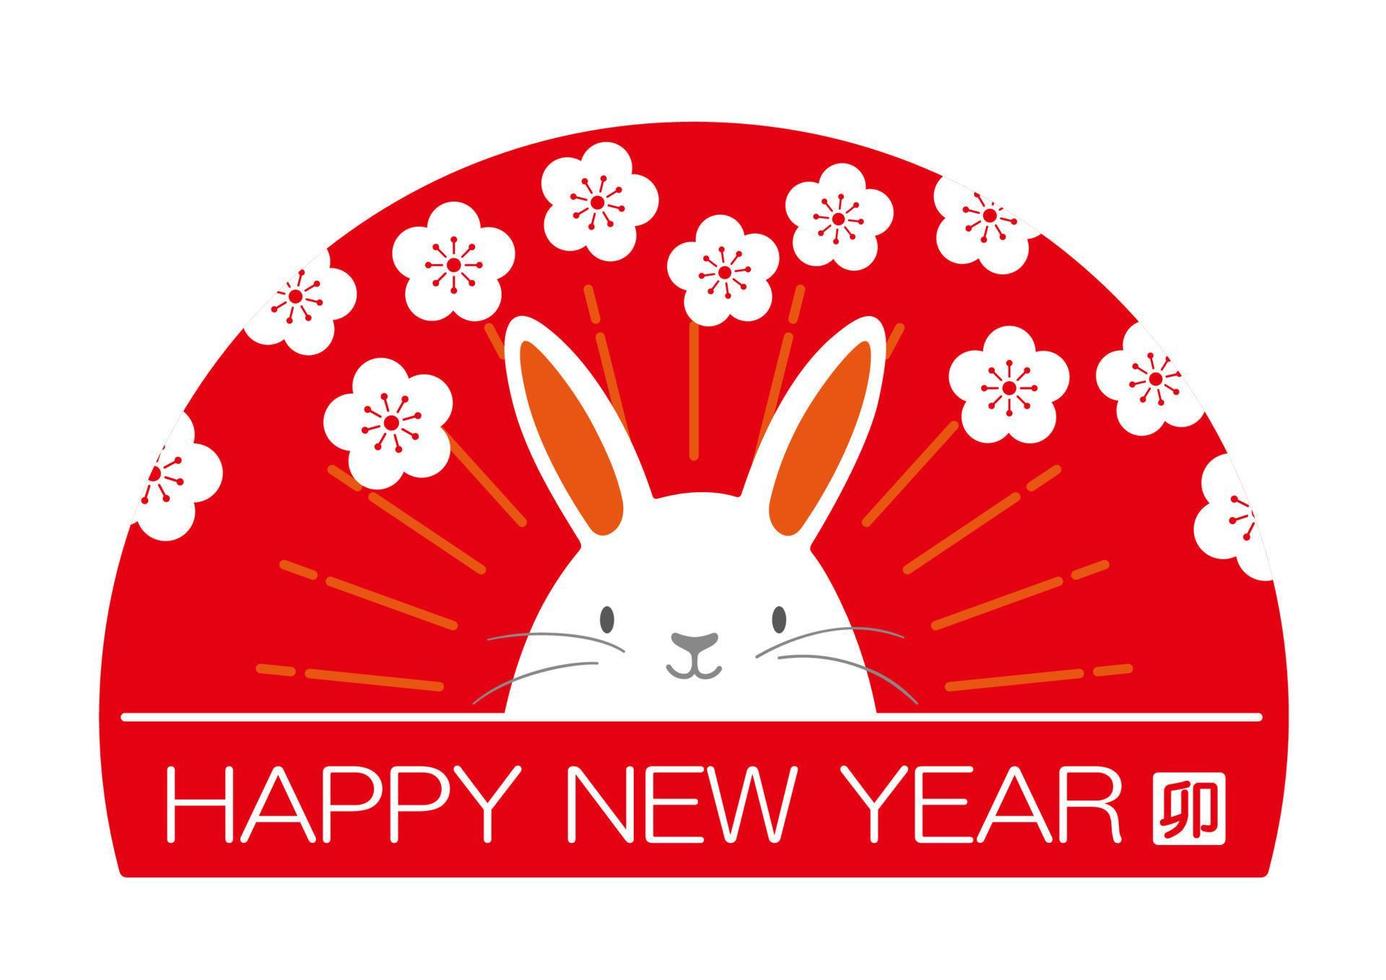 året för kanin vektor hälsningssymbol med en stjärna stämpel isolerad på en vit bakgrund. kanji textöversättning - kaninen.